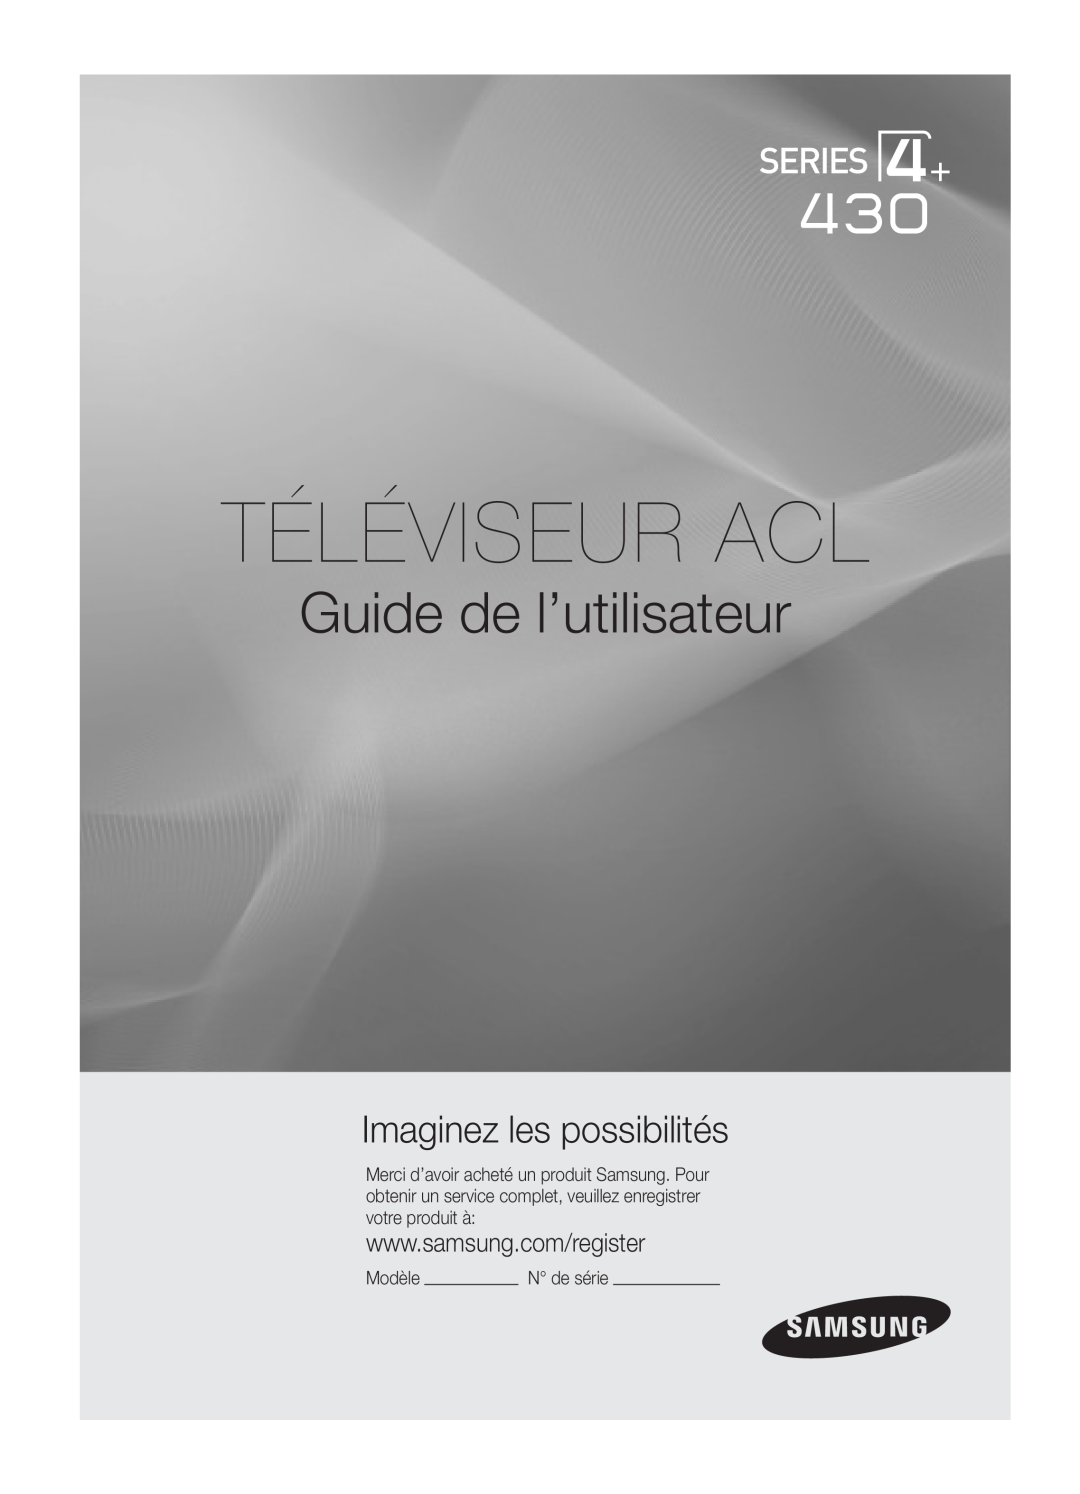 Samsung PC430-ZC, BN68-02576B-06 user manual Téléviseur Acl, Guide de l’utilisateur, Imaginez les possibilités, Modèle 